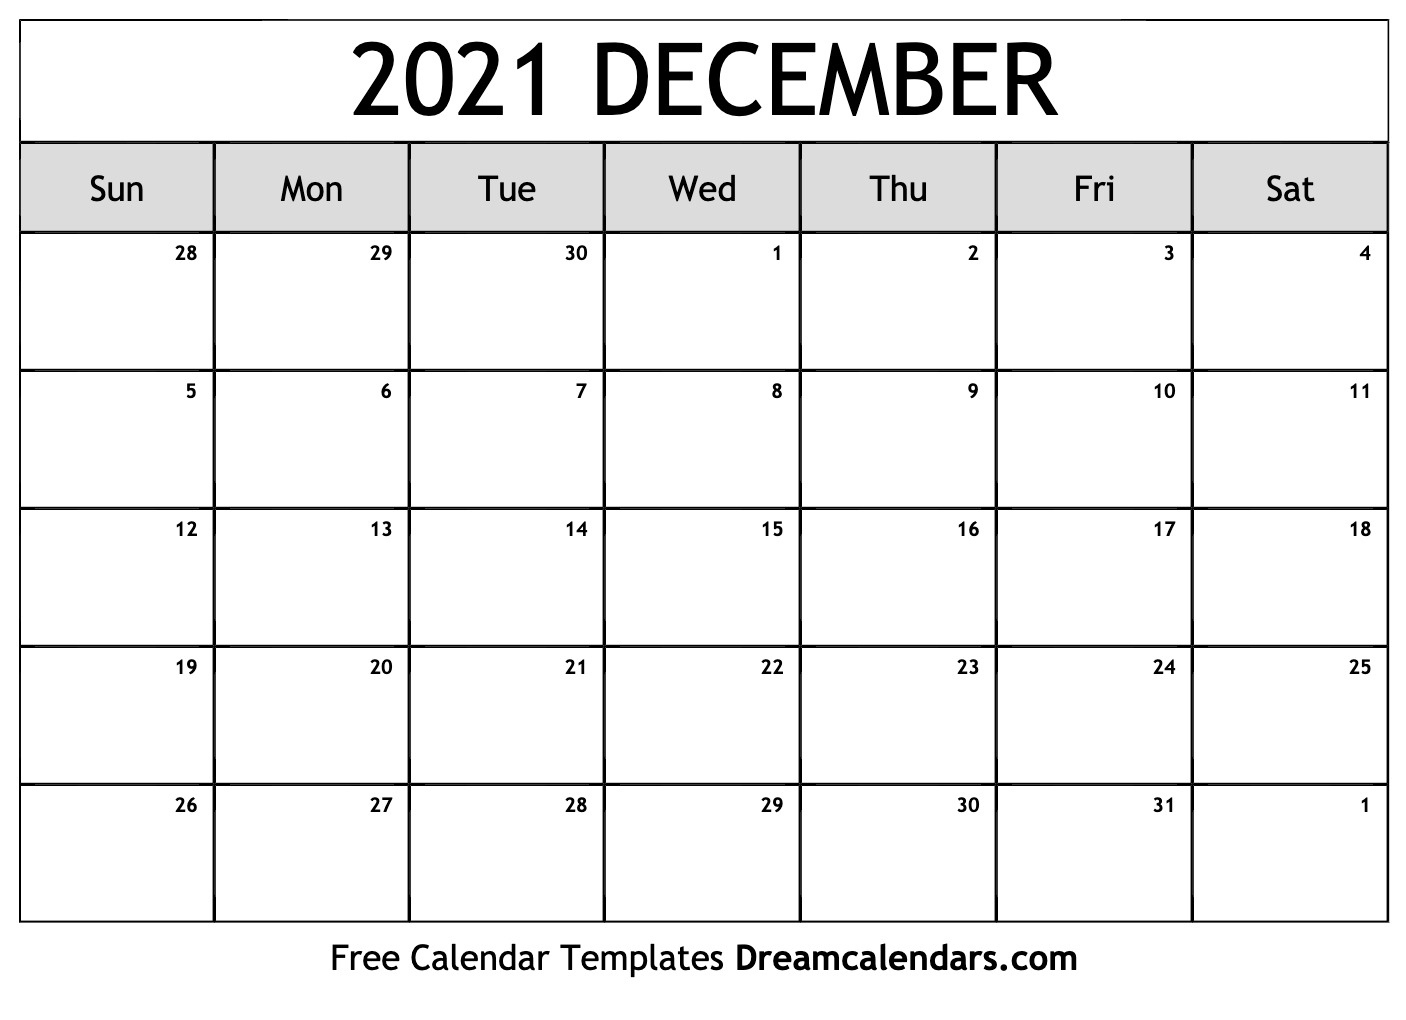 December 2021 Calendar Printable | Example Calendar Printable Printable Calendar December 2020 To March 2021